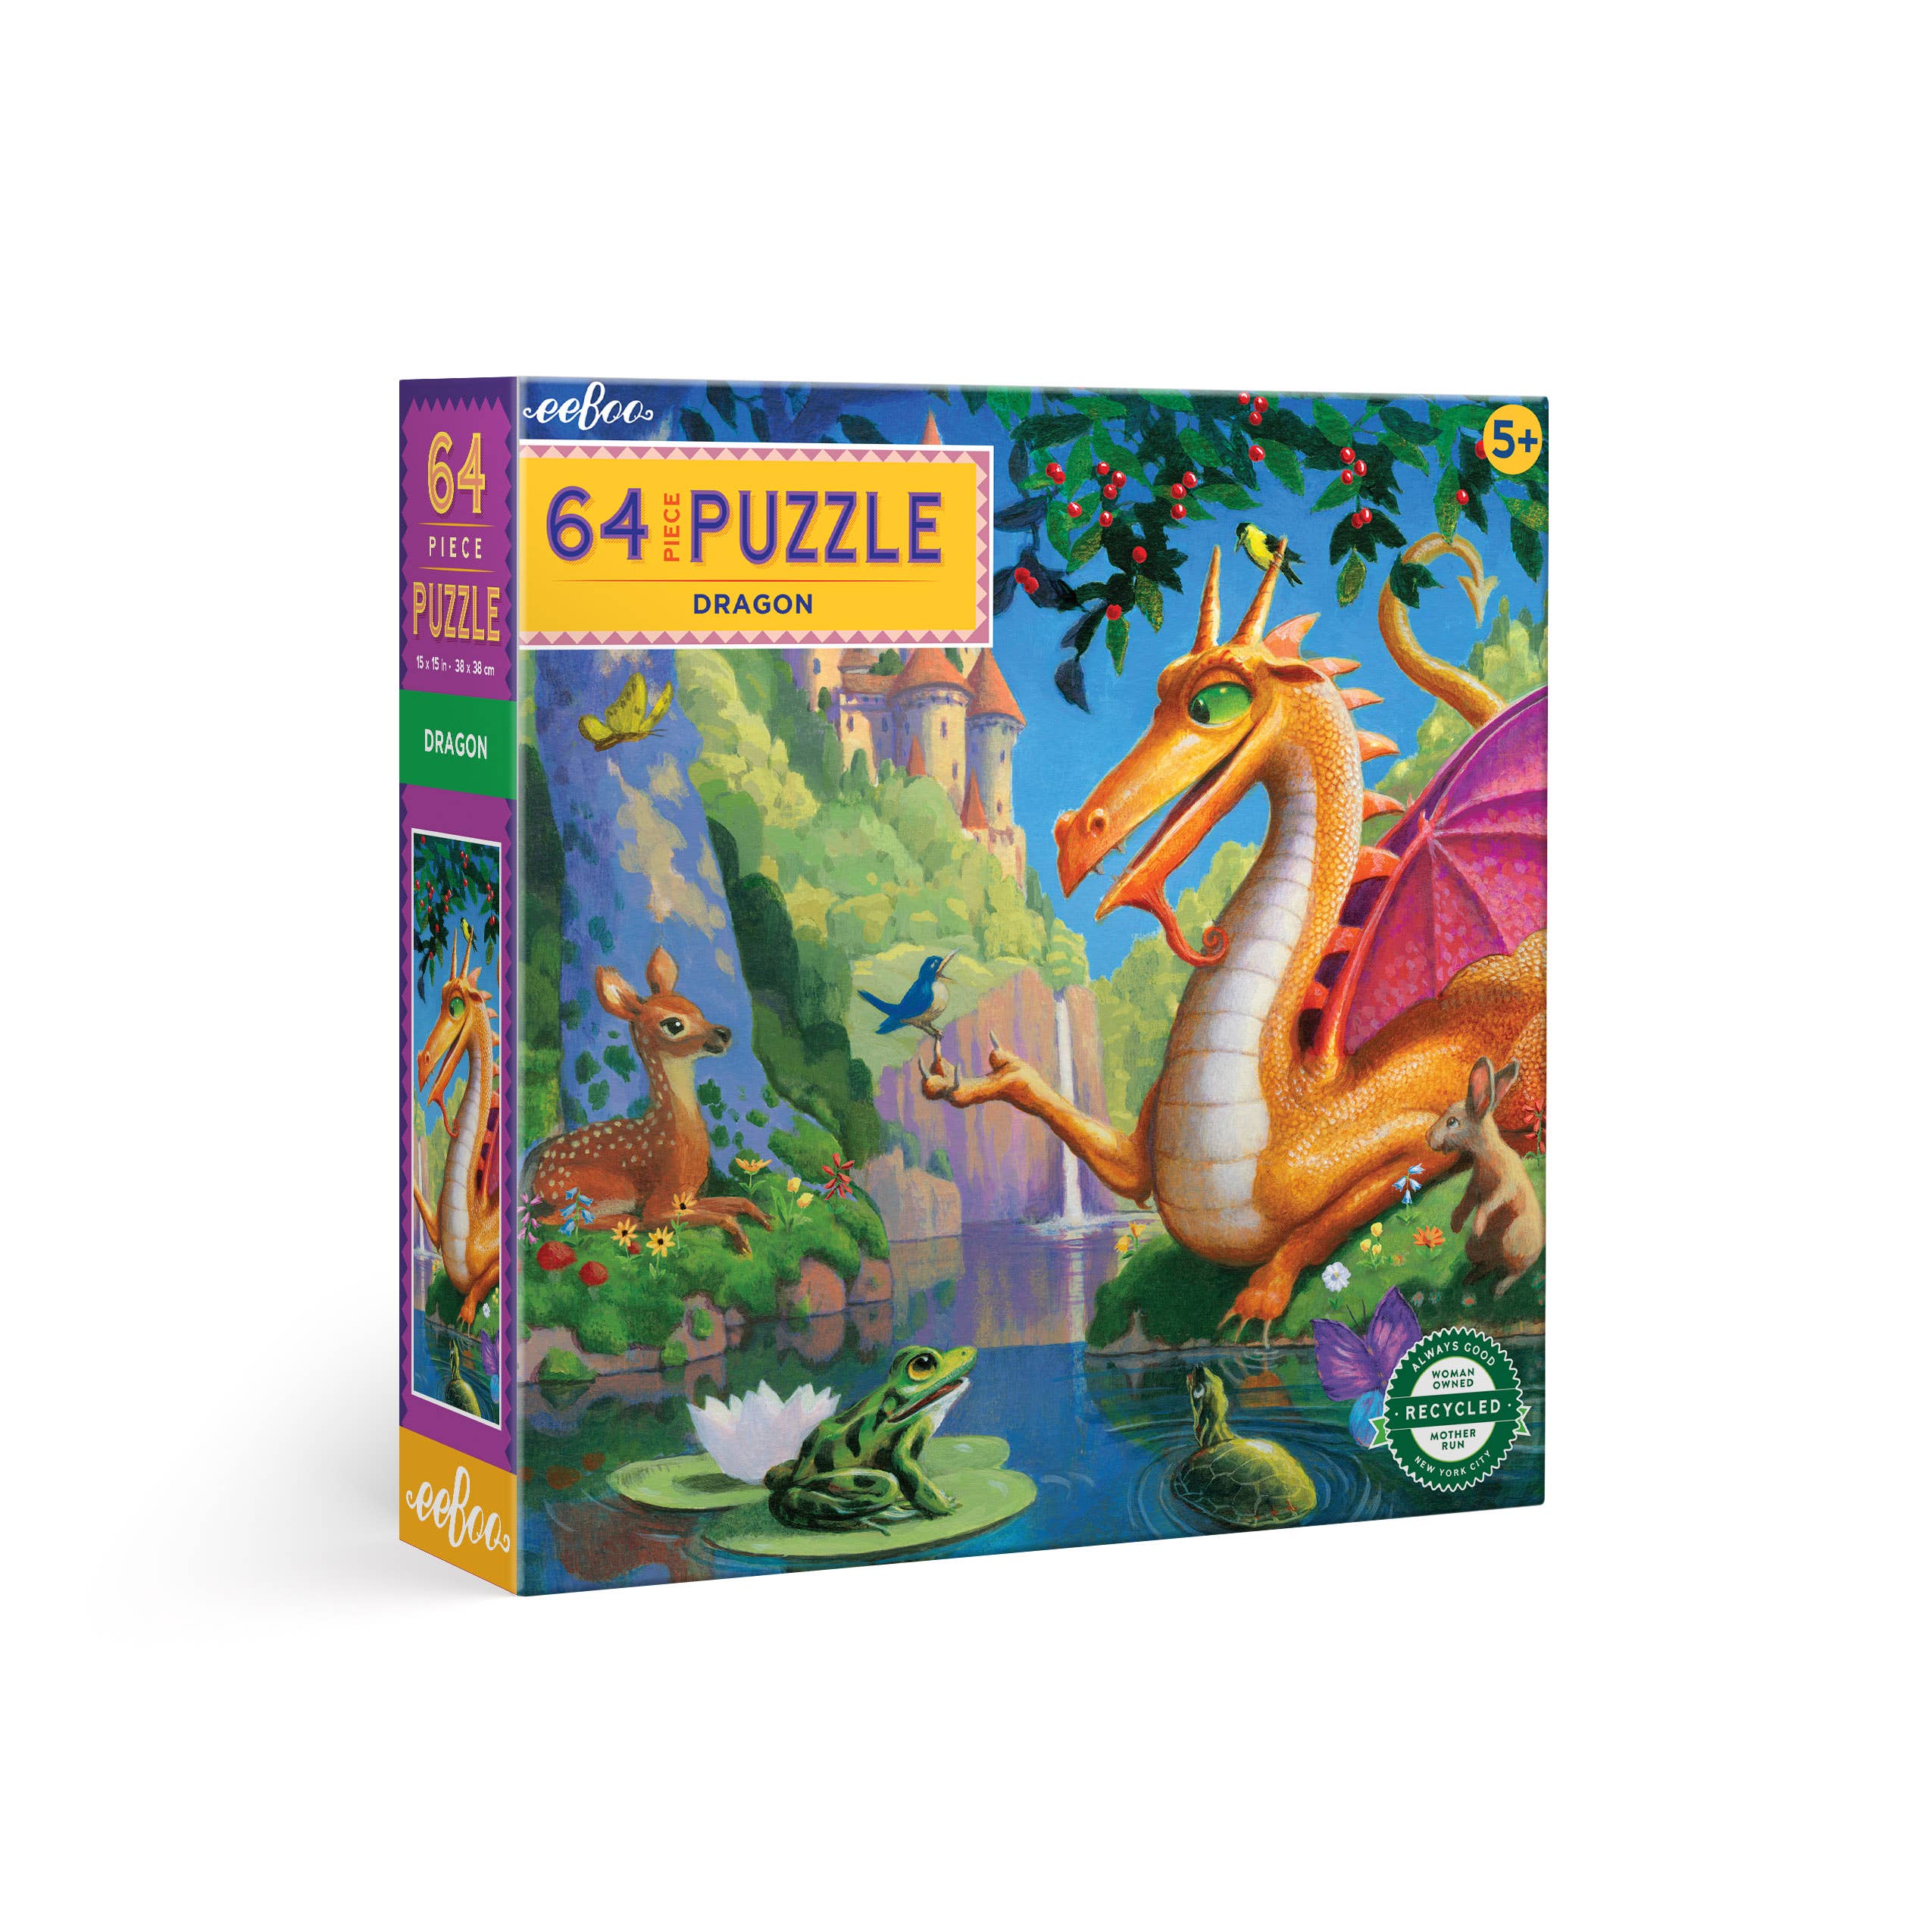 Puzzle: Dragon (64 Pieces)